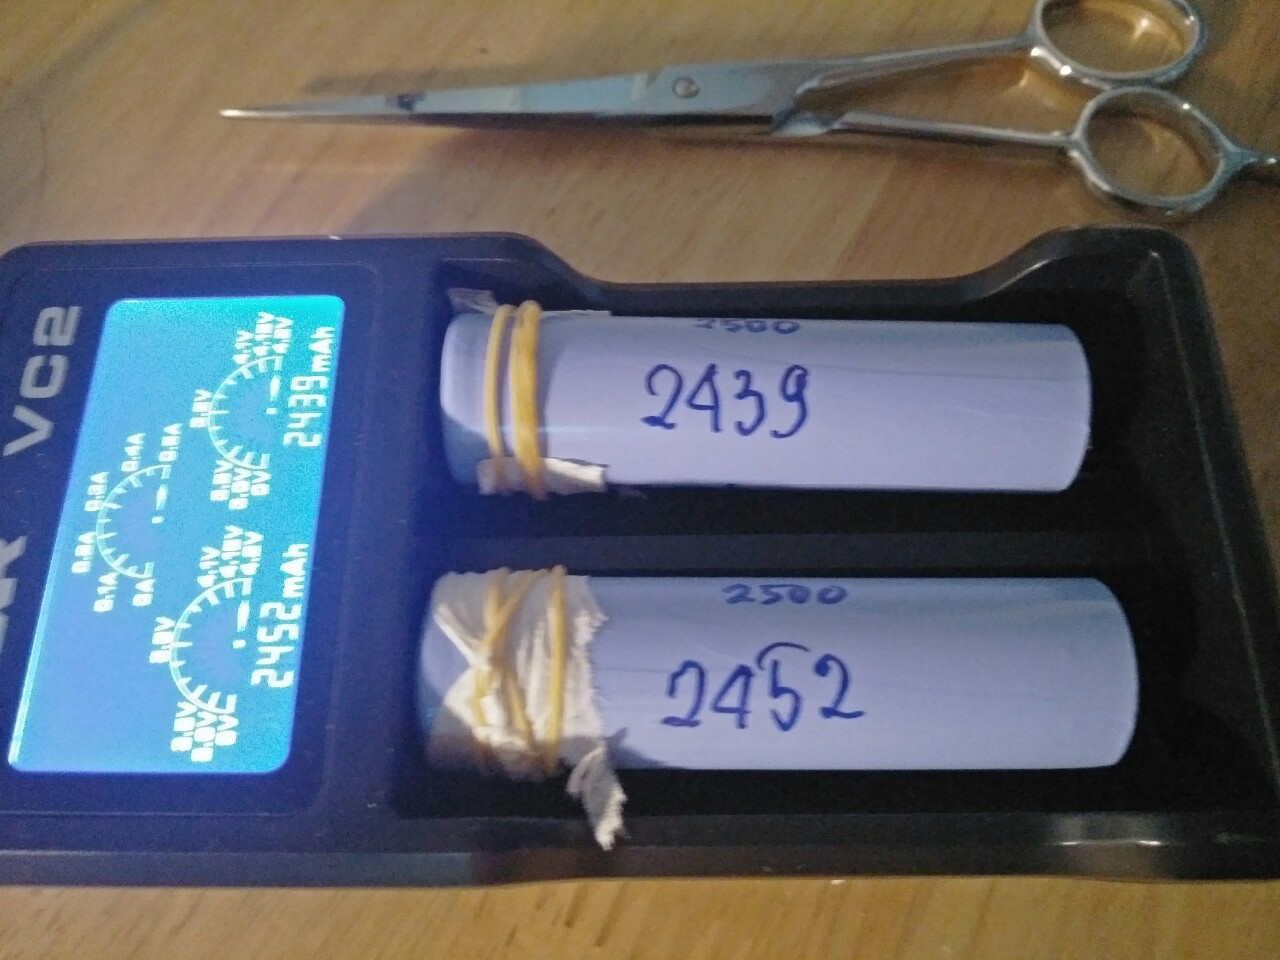 Thanh lý Pin cũ 18650 đầu bằng tháo LAPTOP dung lượng cao từ 2500mah. giá 2 hay 10 pin